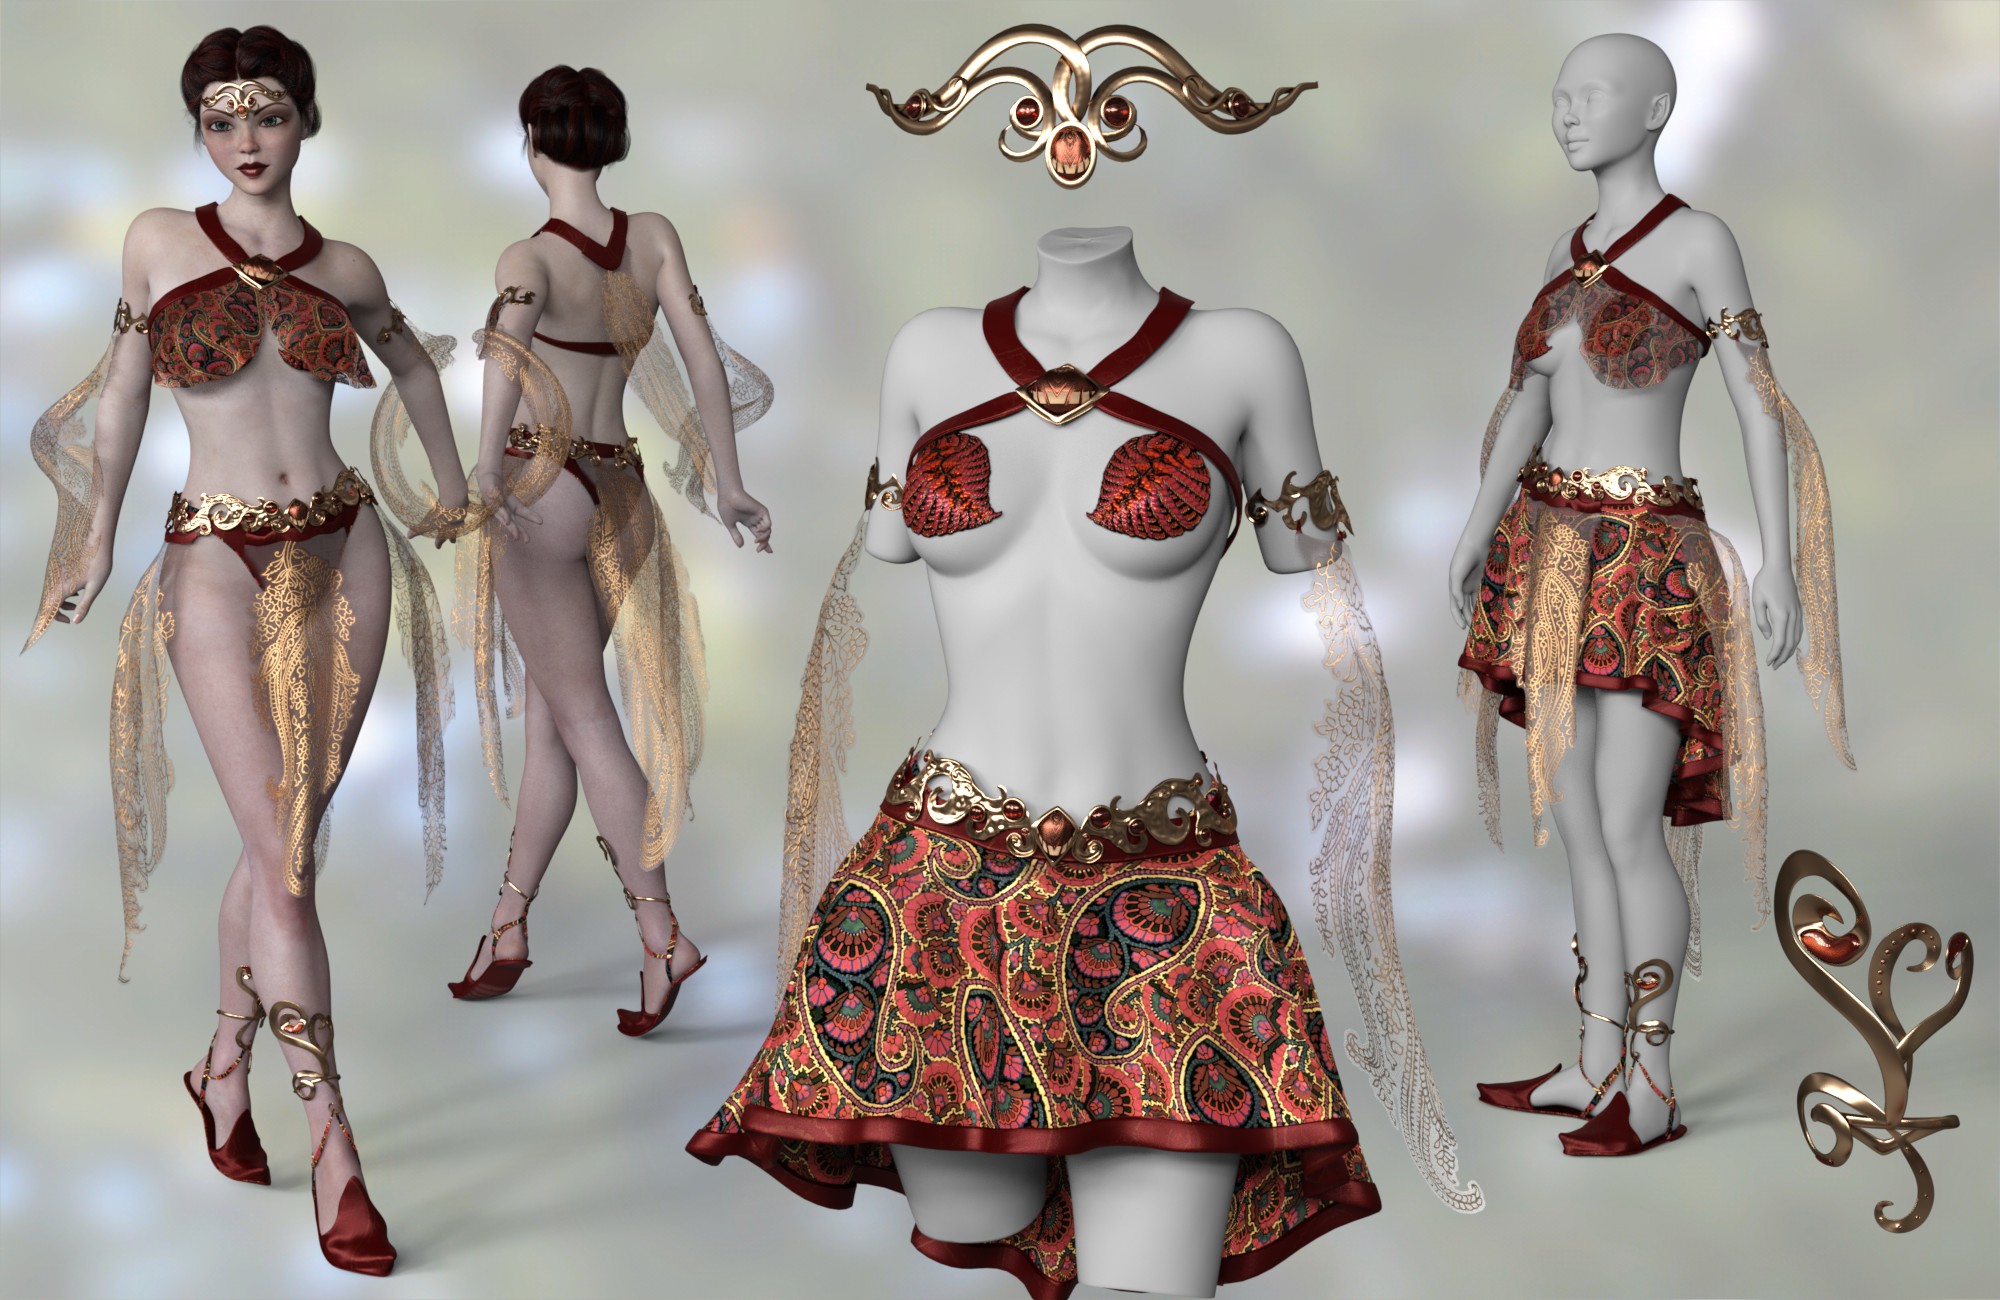 Celinette Clothes Expansion by: 3D-GHDesign, 3D Models by Daz 3D